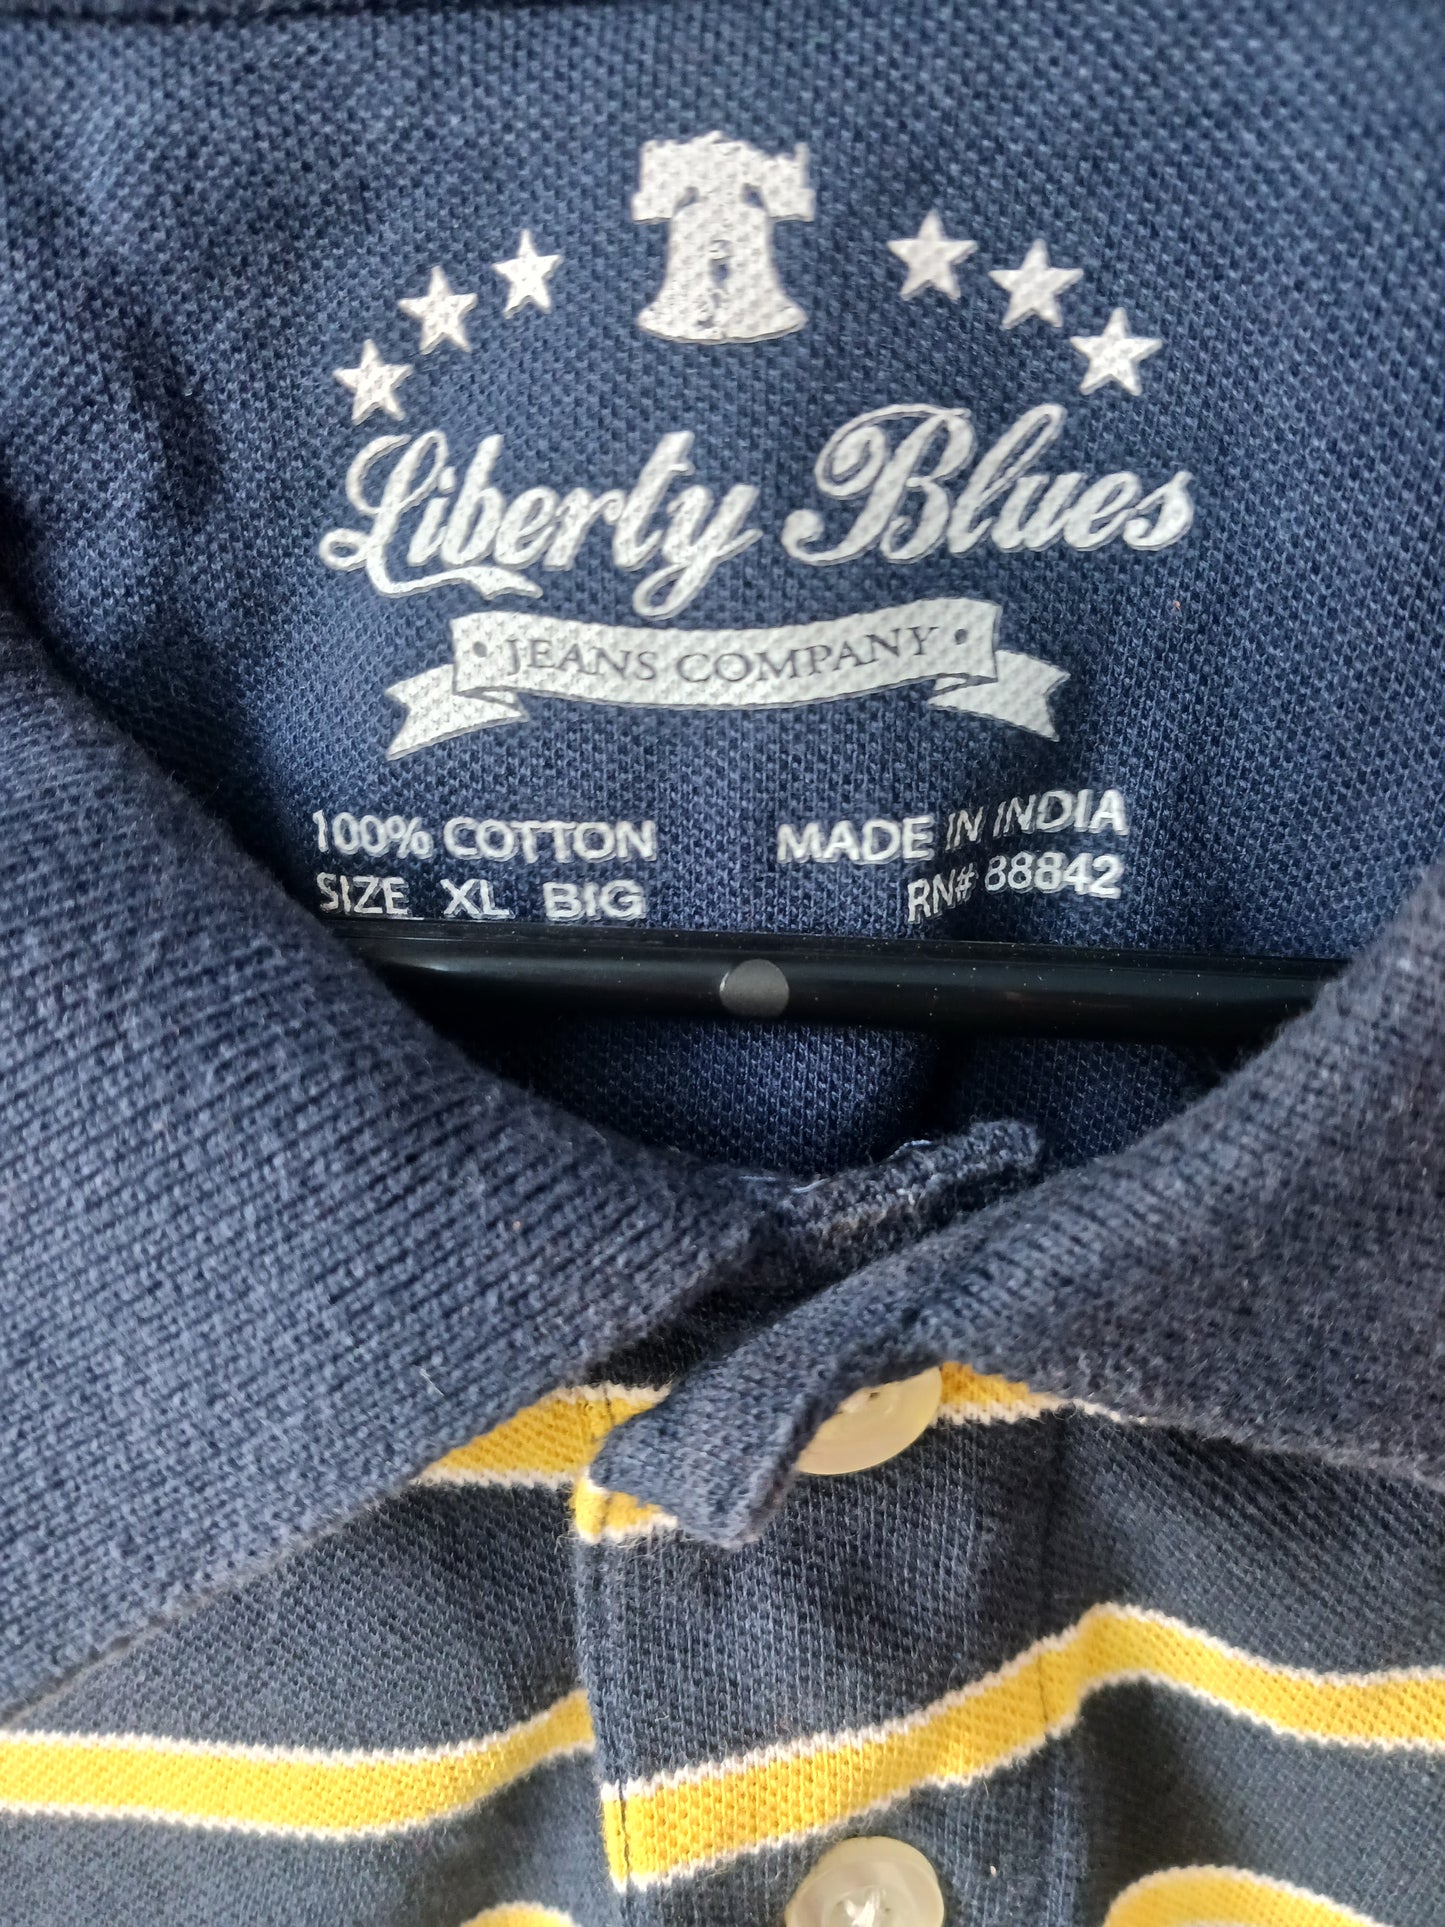 Liberty Blues Striped Polos, Size XL